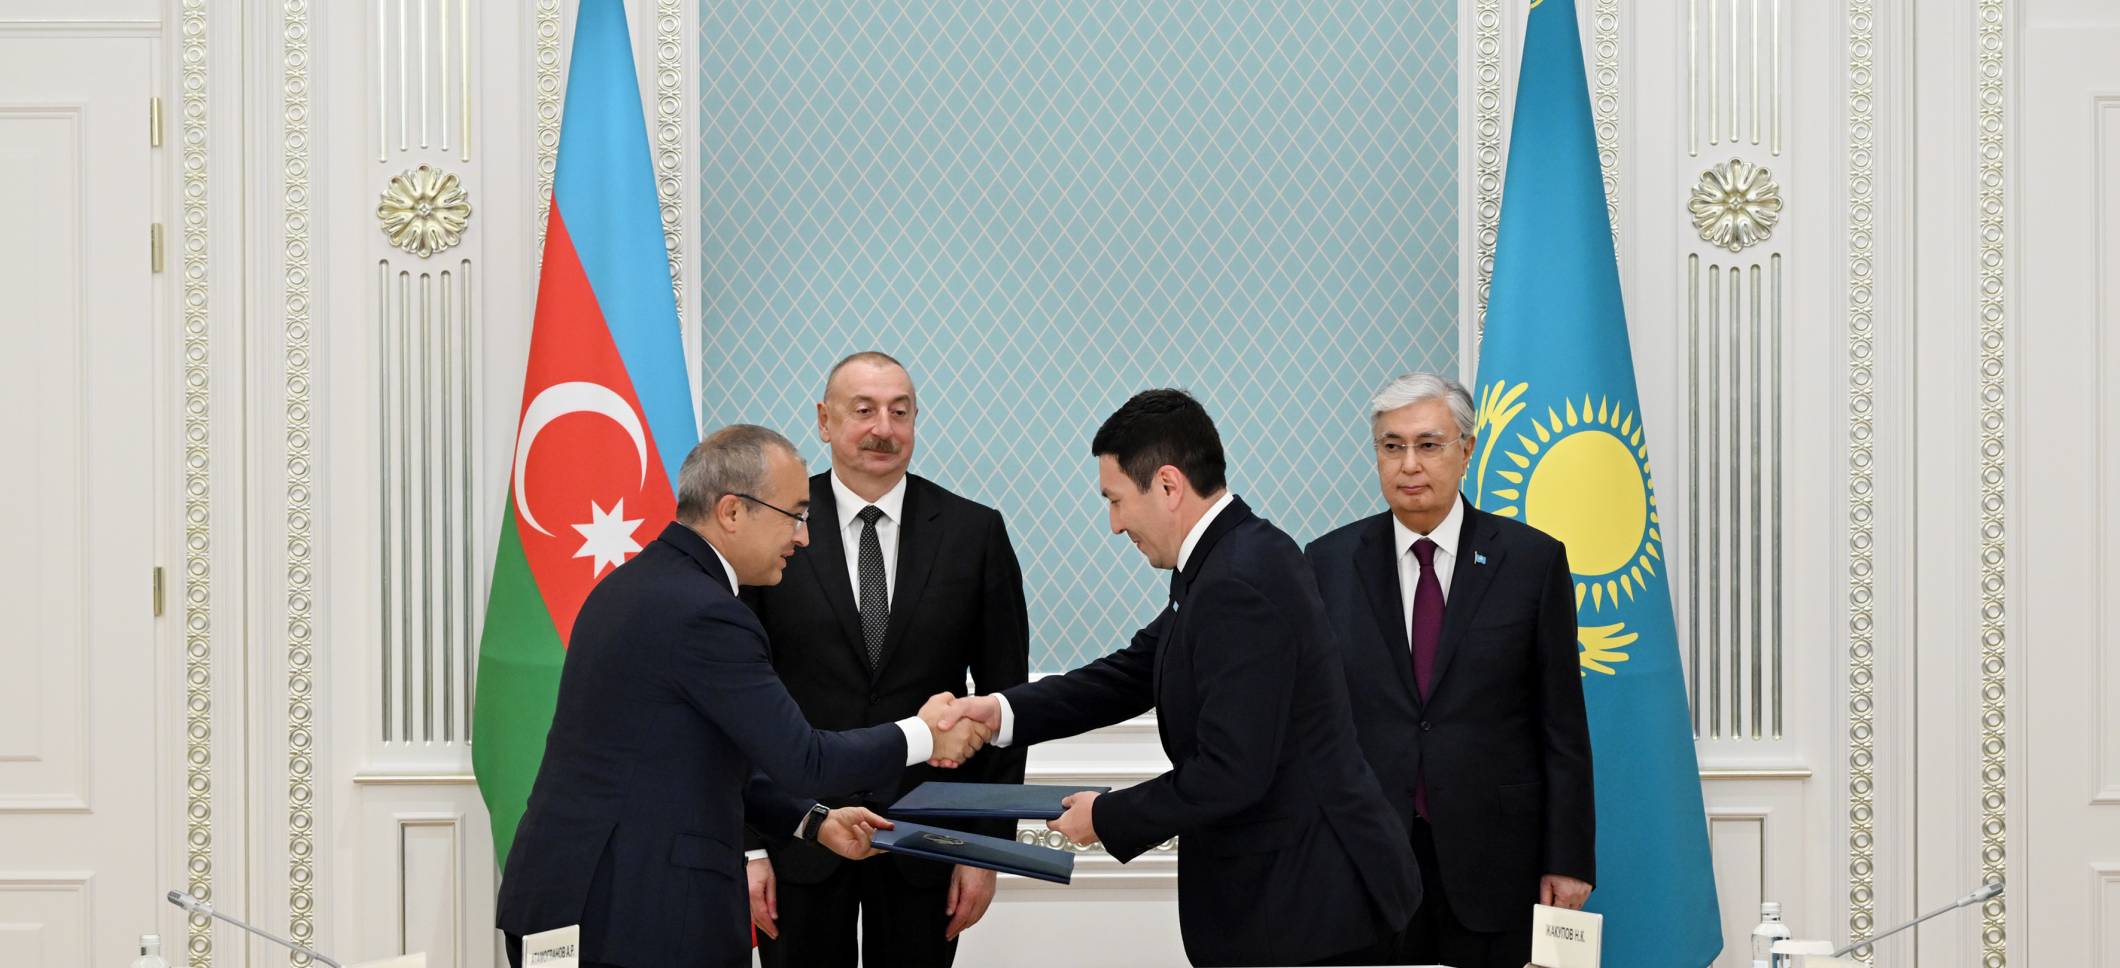 В Астане состоялась церемония обмена Договором акционеров, подписанным между Азербайджаном и Казахстаном